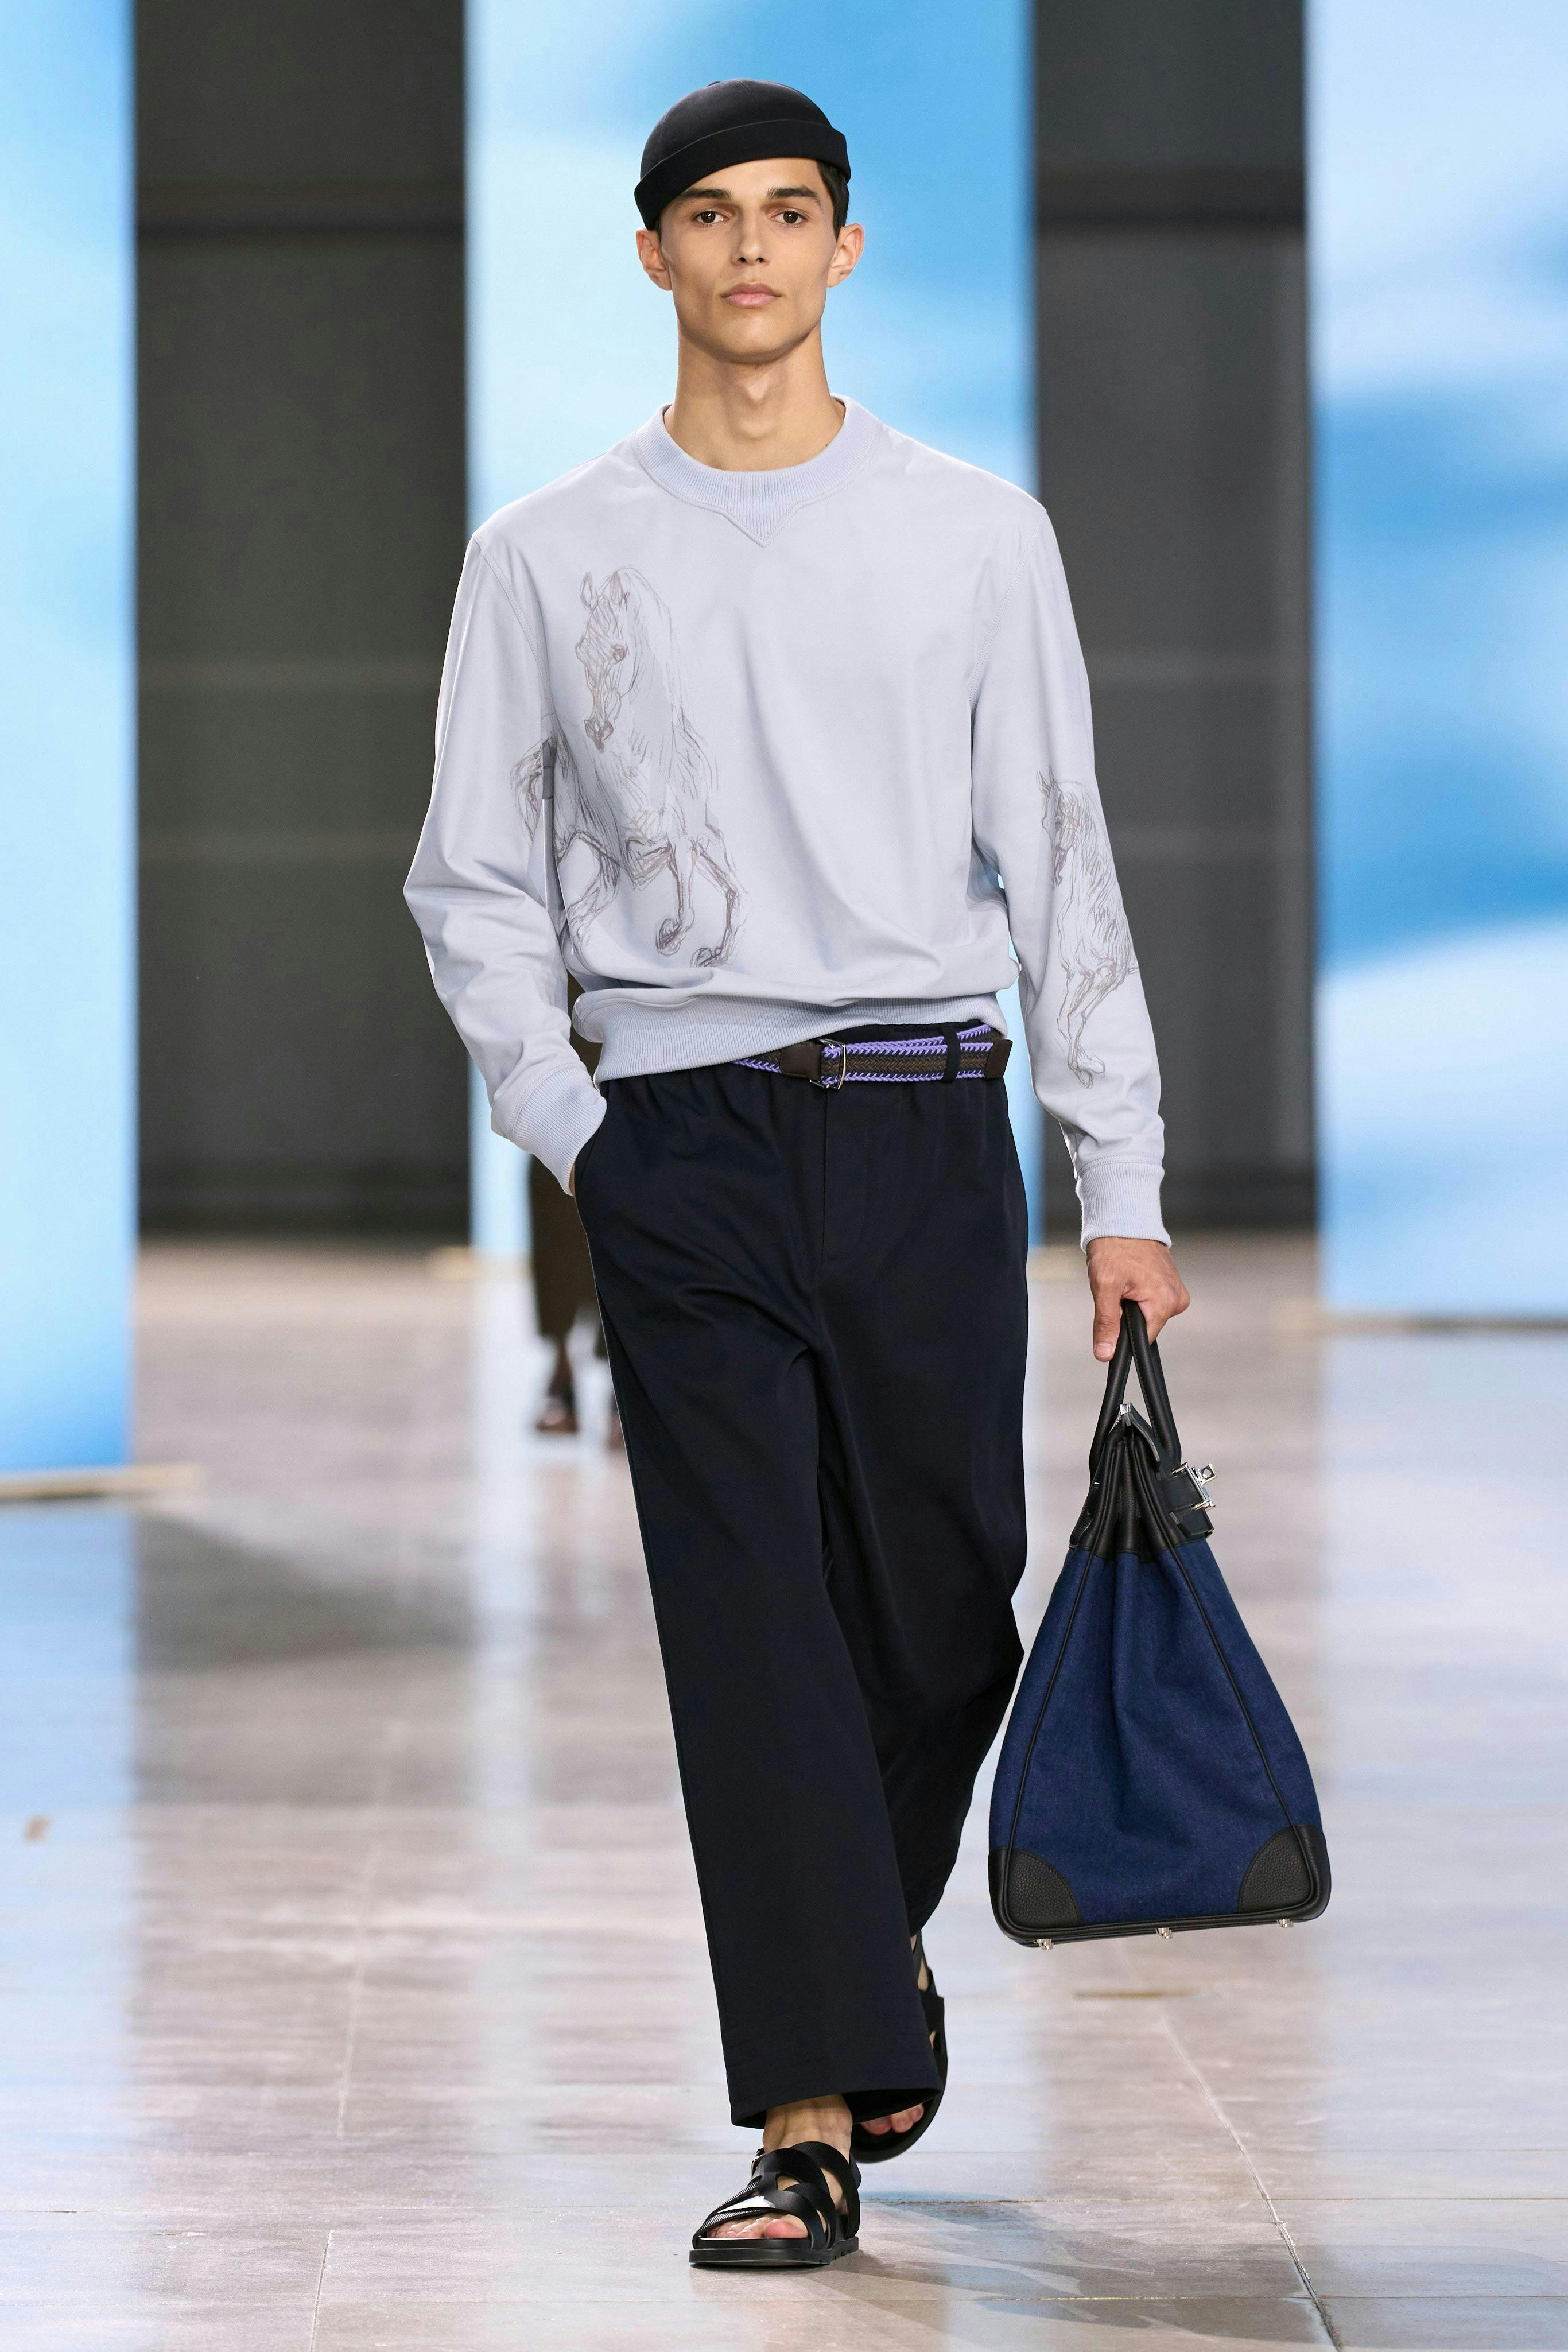 long sleeve sleeve pants adult male man person sandal handbag fashion